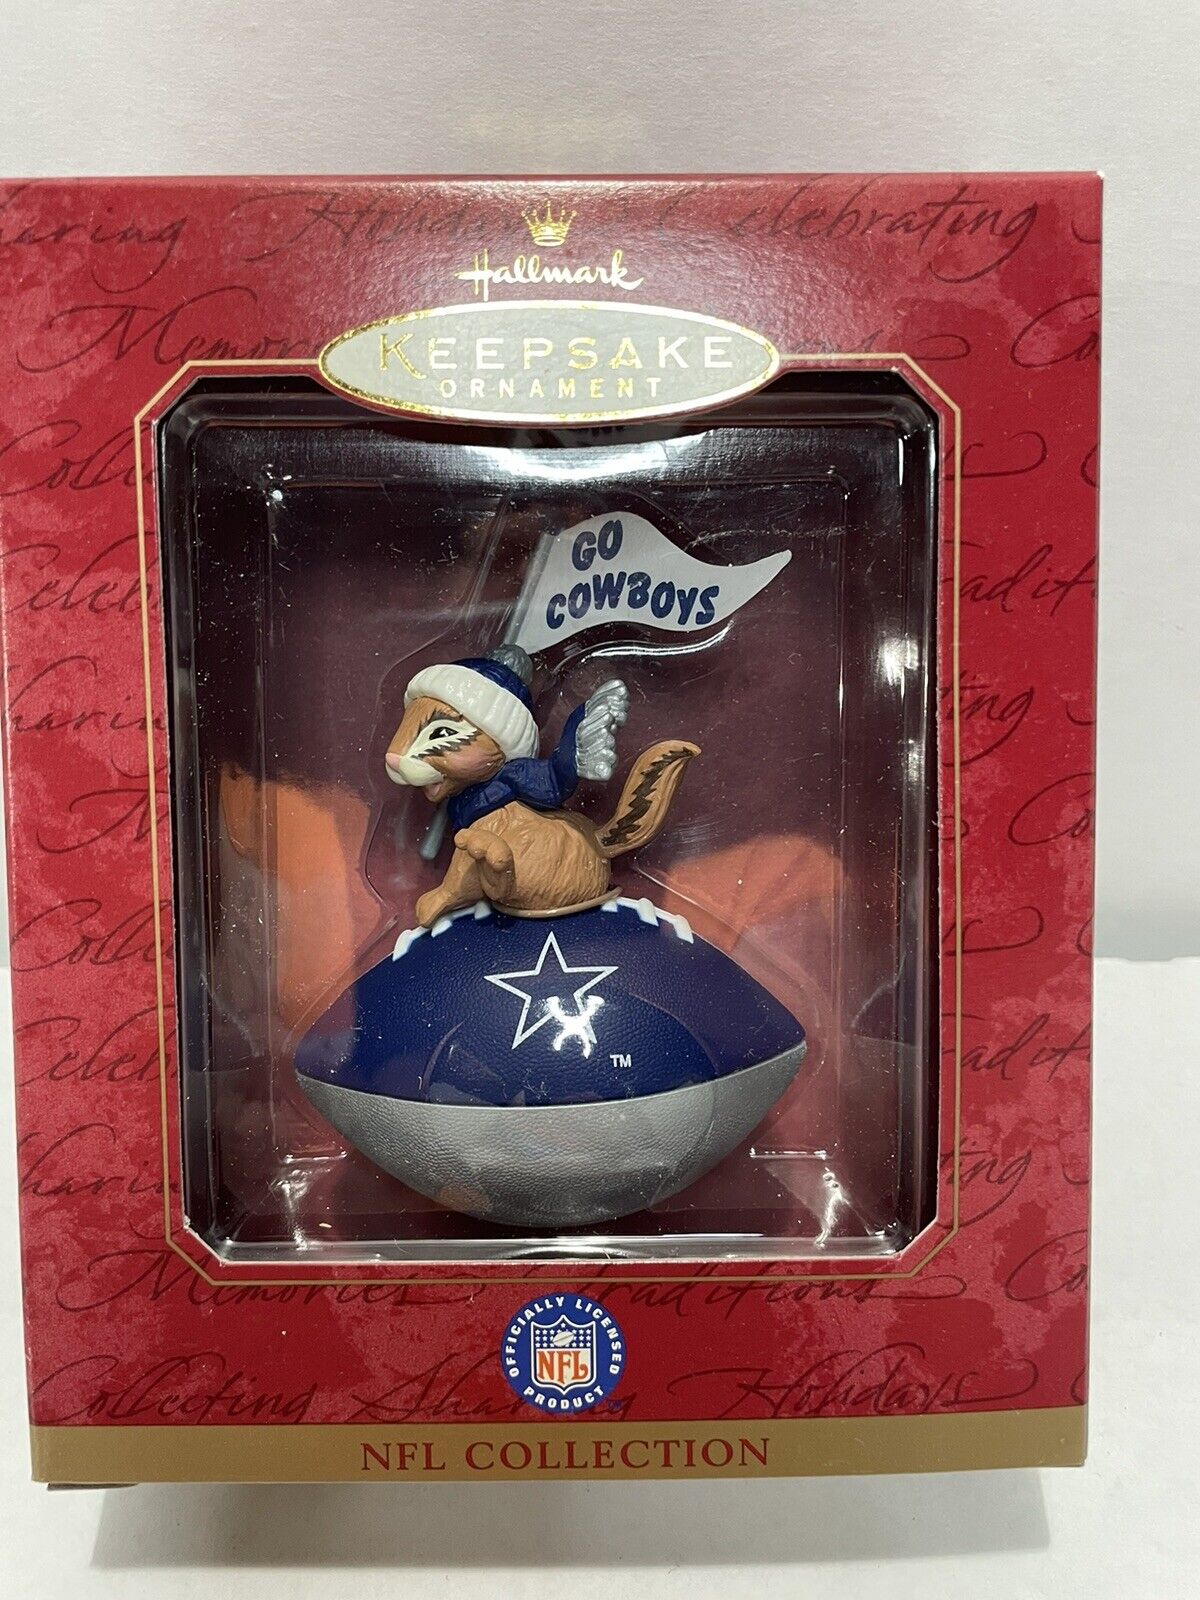 Vintage Hallmark Keepsake Ornaments NFL Collection (GO COWBOYS) Dallas Cowboys 